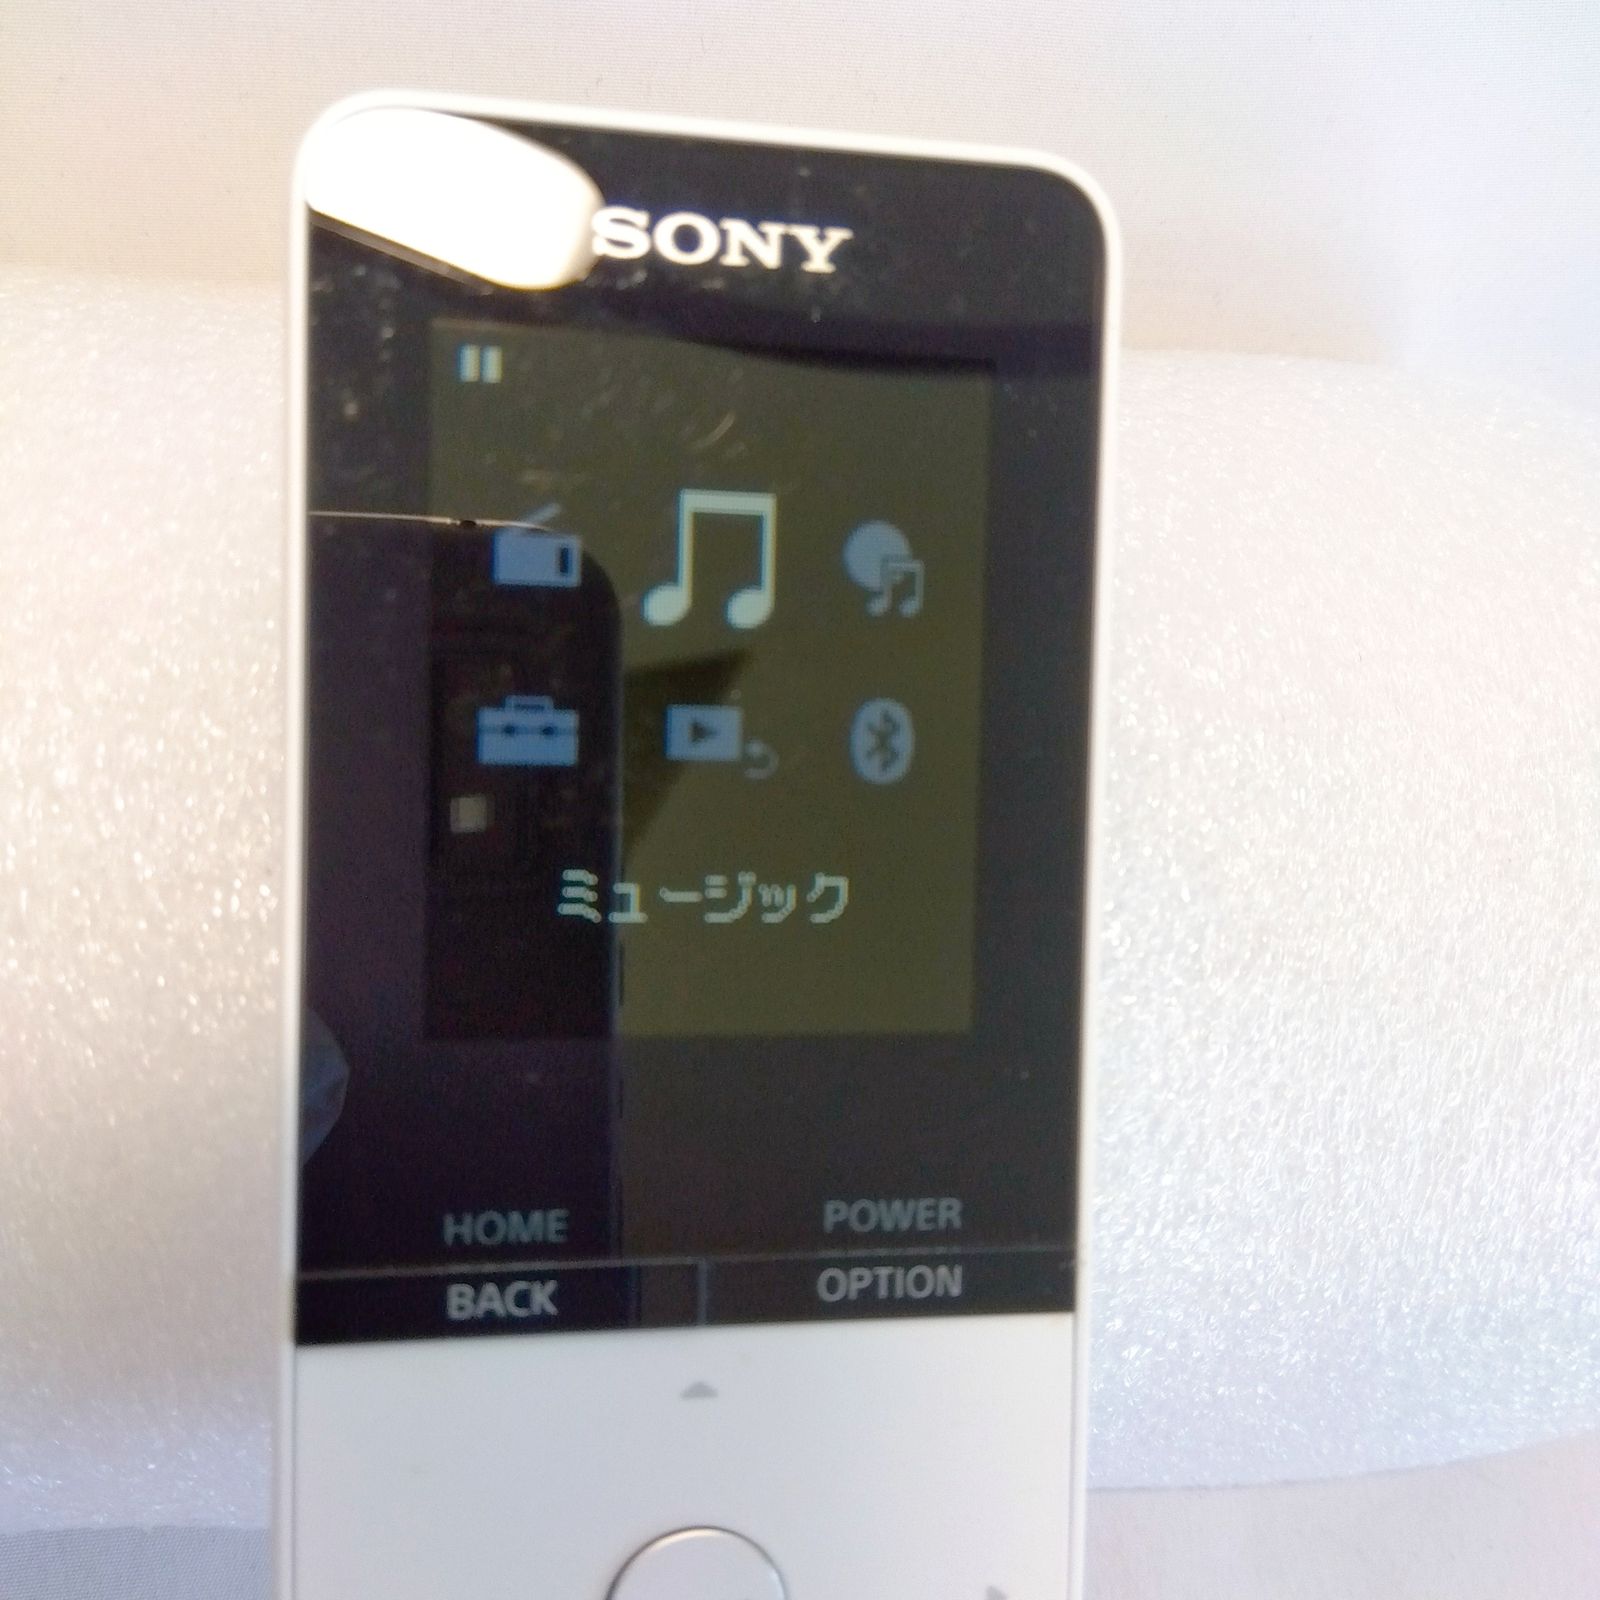 ソニー(SONY) ウォークマン Sシリーズ 16GB NW-S315 : MP3プレーヤー Bluetooth対応  ホワイト